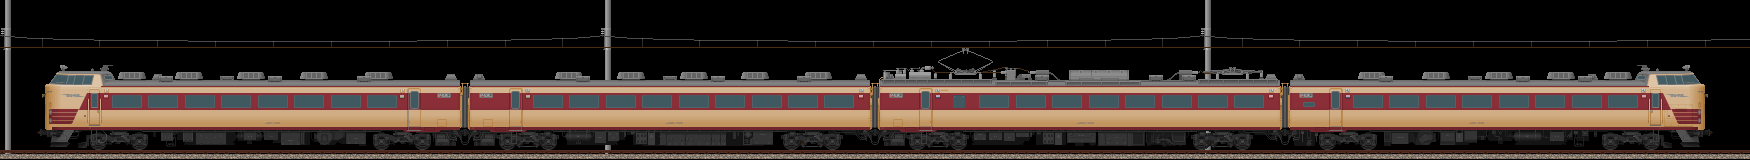 485系特急形電車･4両基本編成